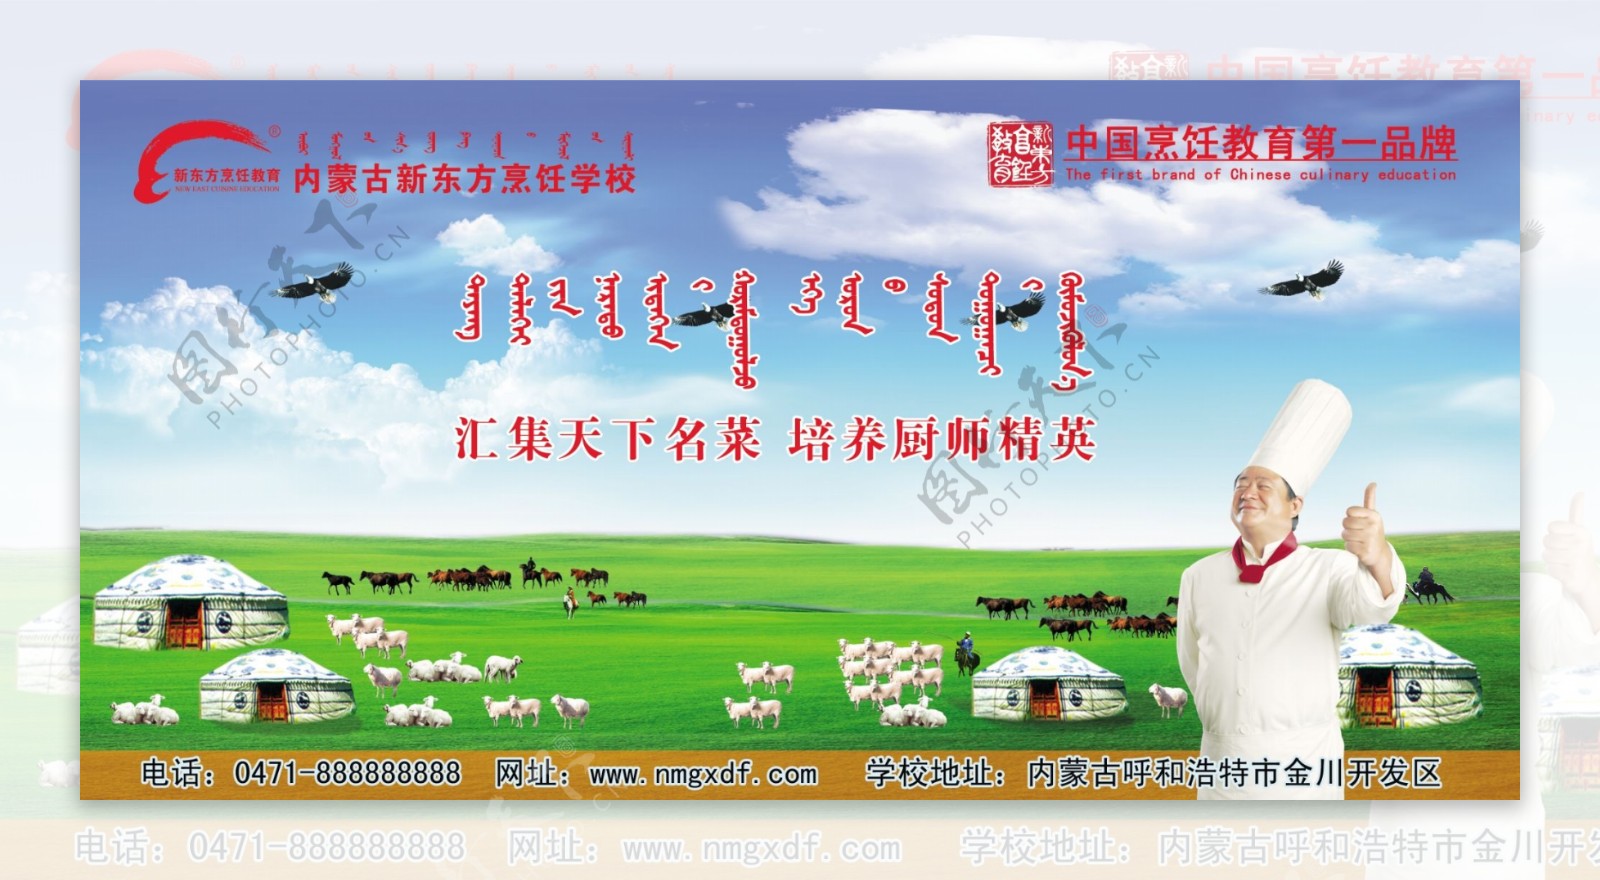 内蒙古新东方烹饪学校海报图片